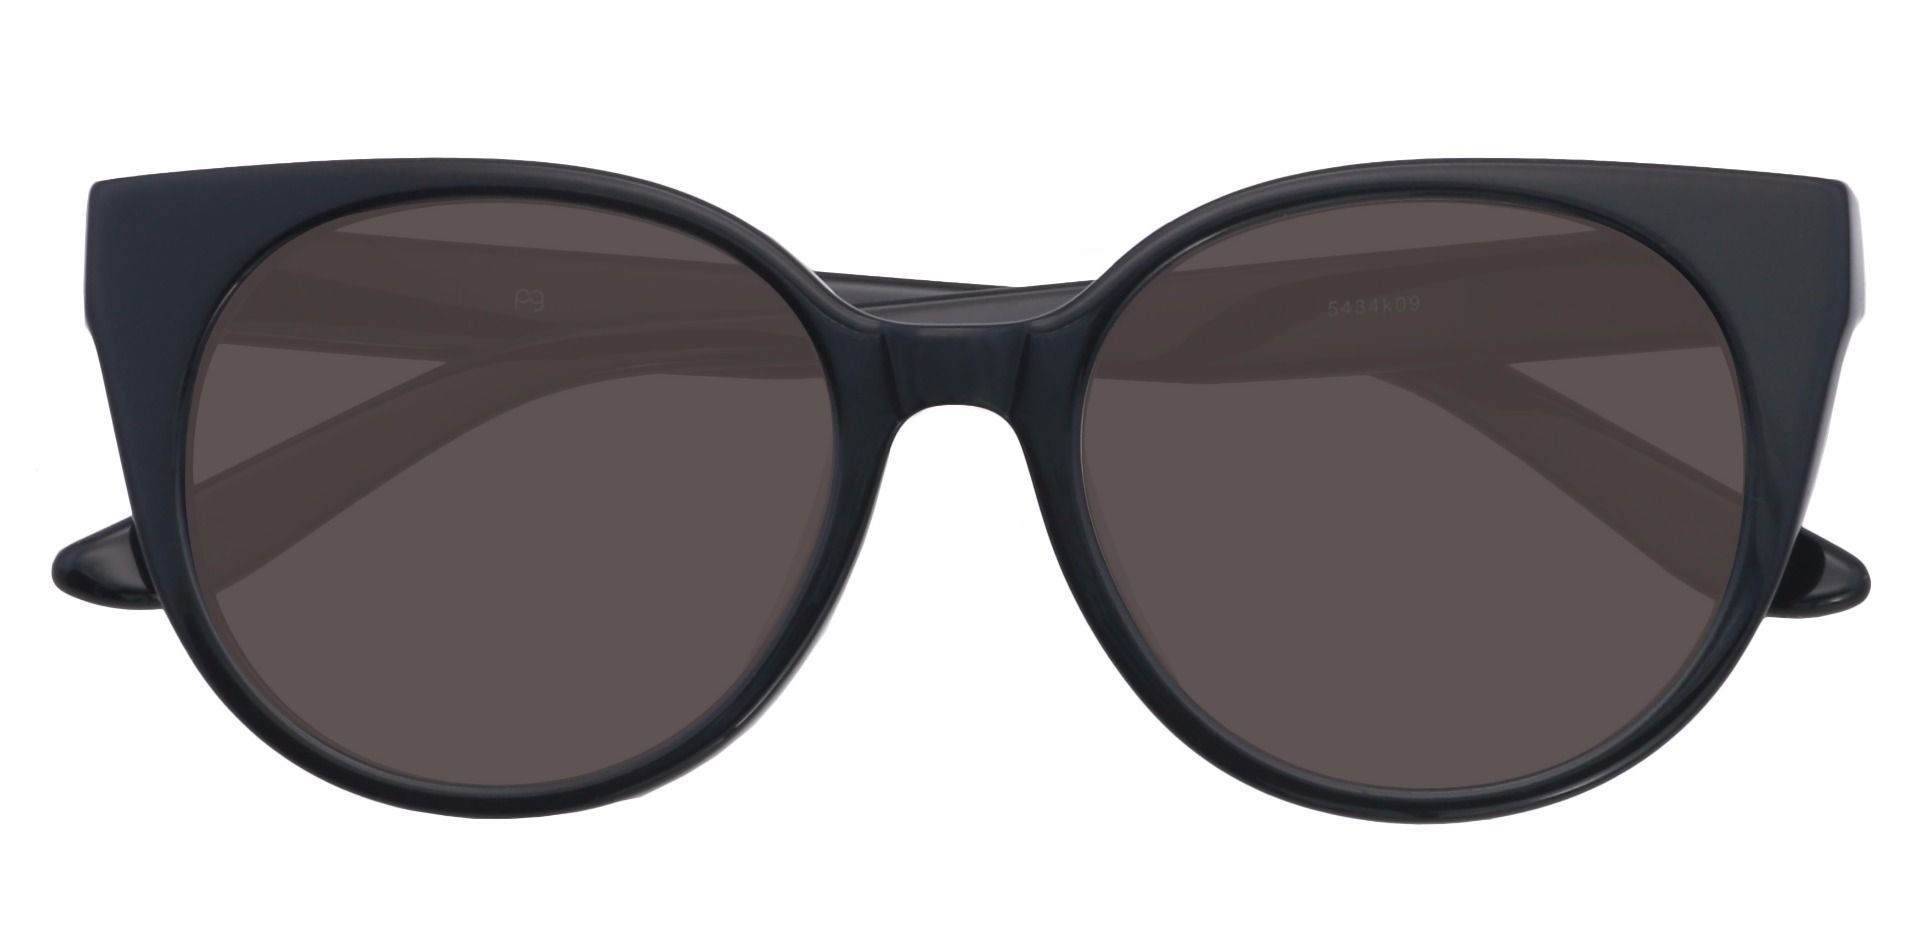 Balmoral Cat-Eye Reading Sunglasses - Black Frame With Gray Lenses